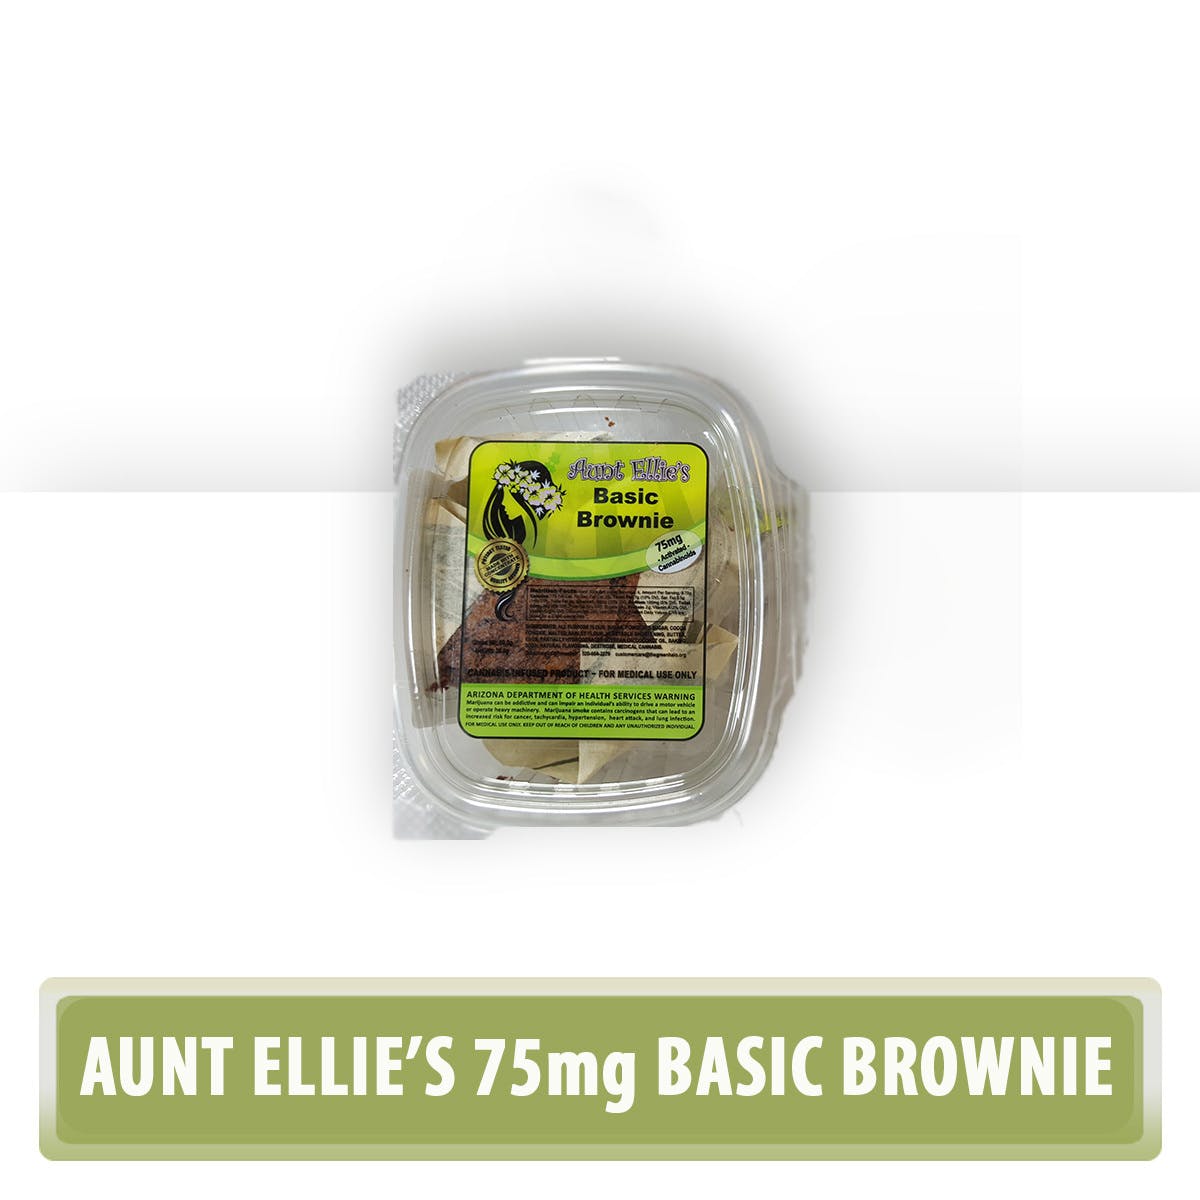 Aunt Ellie's Basic Brownie 75mg